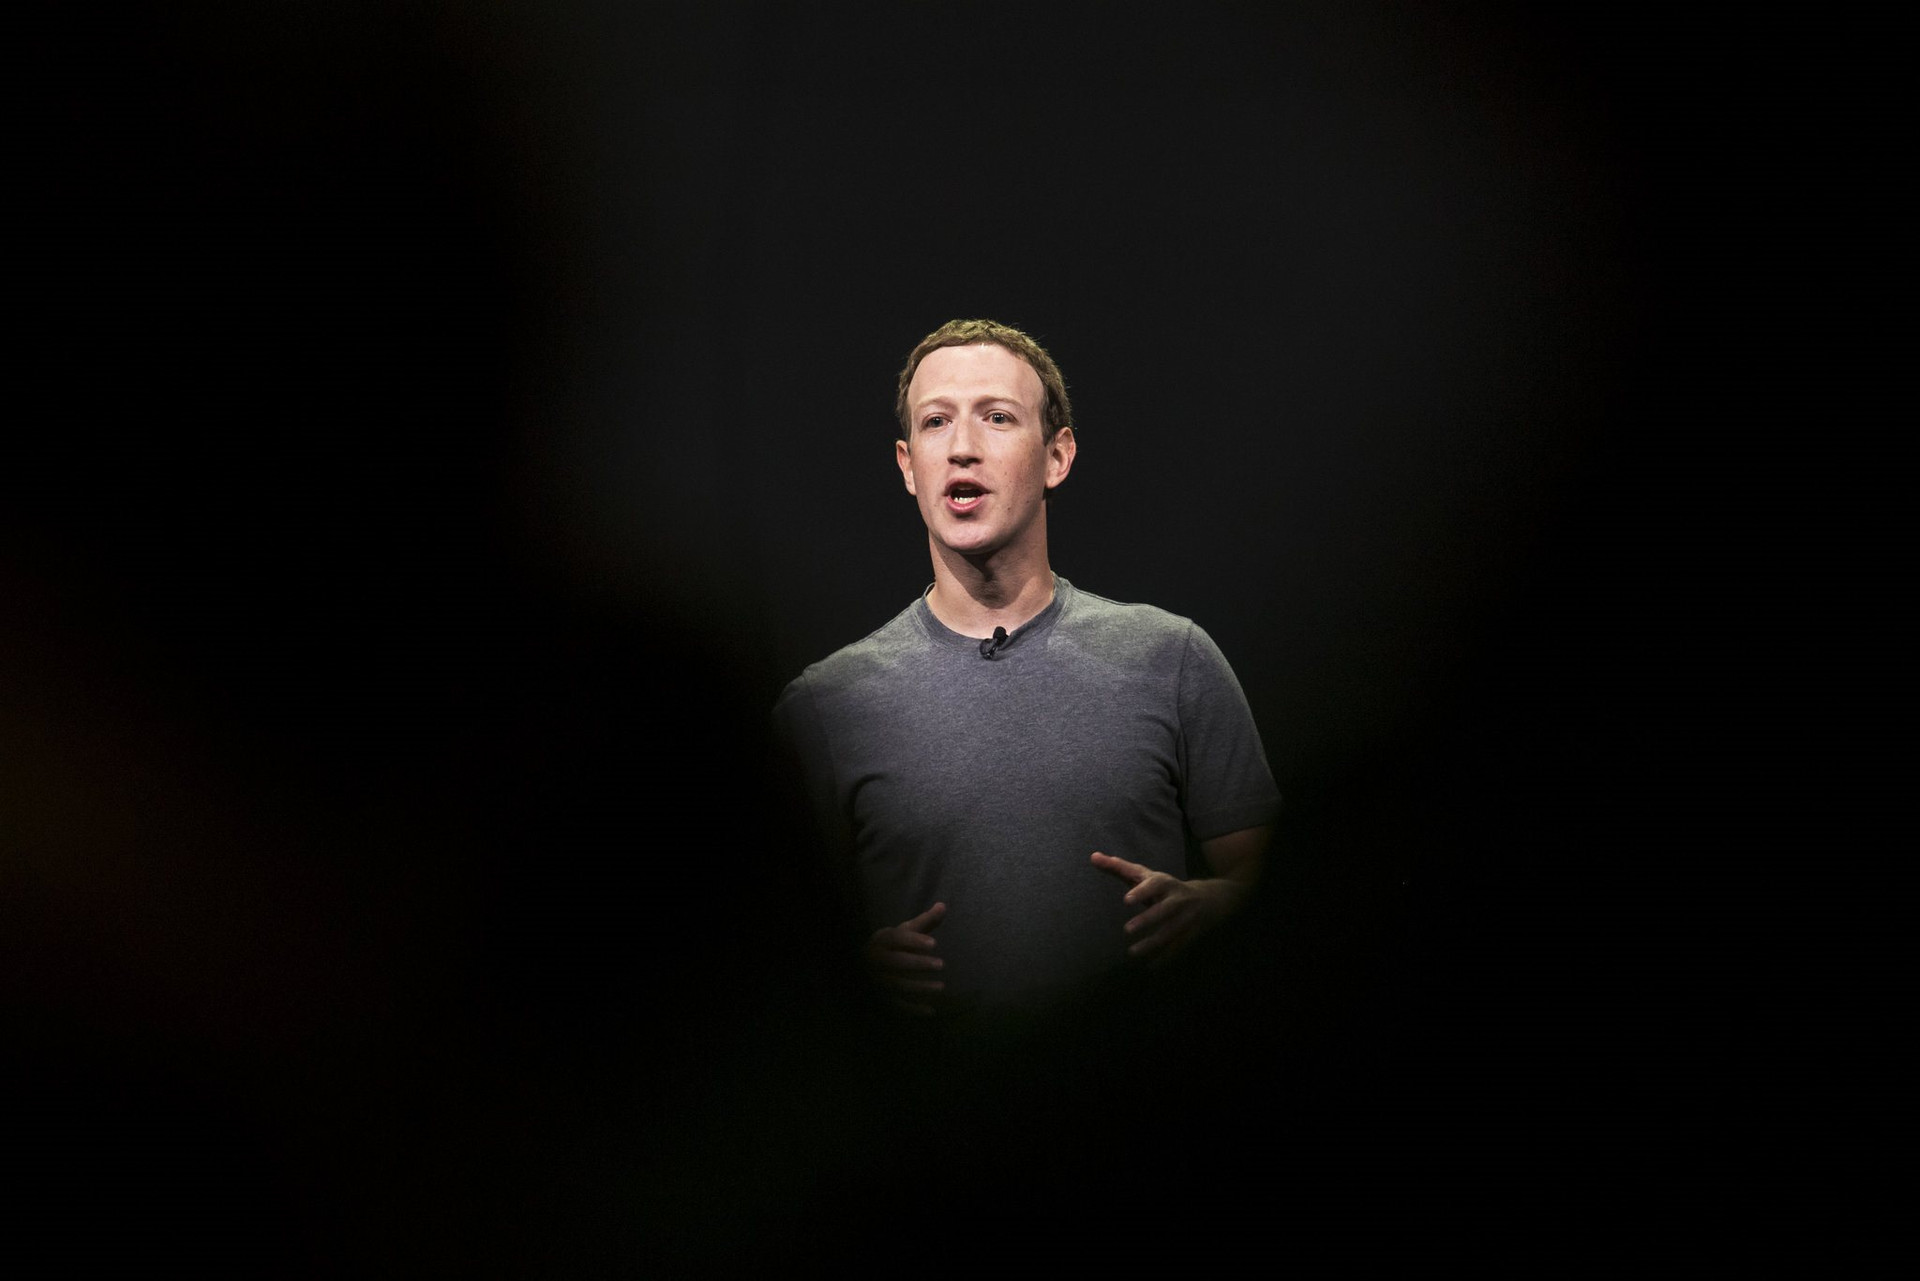 Chạy theo vũ trụ ảo, Mark Zuckerberg bỏ lơ Facebook đang ‘biến chất’: Tràn ngập spam, người dùng than phiền newsfeed quá nhiều ‘rác’ - Ảnh 2.